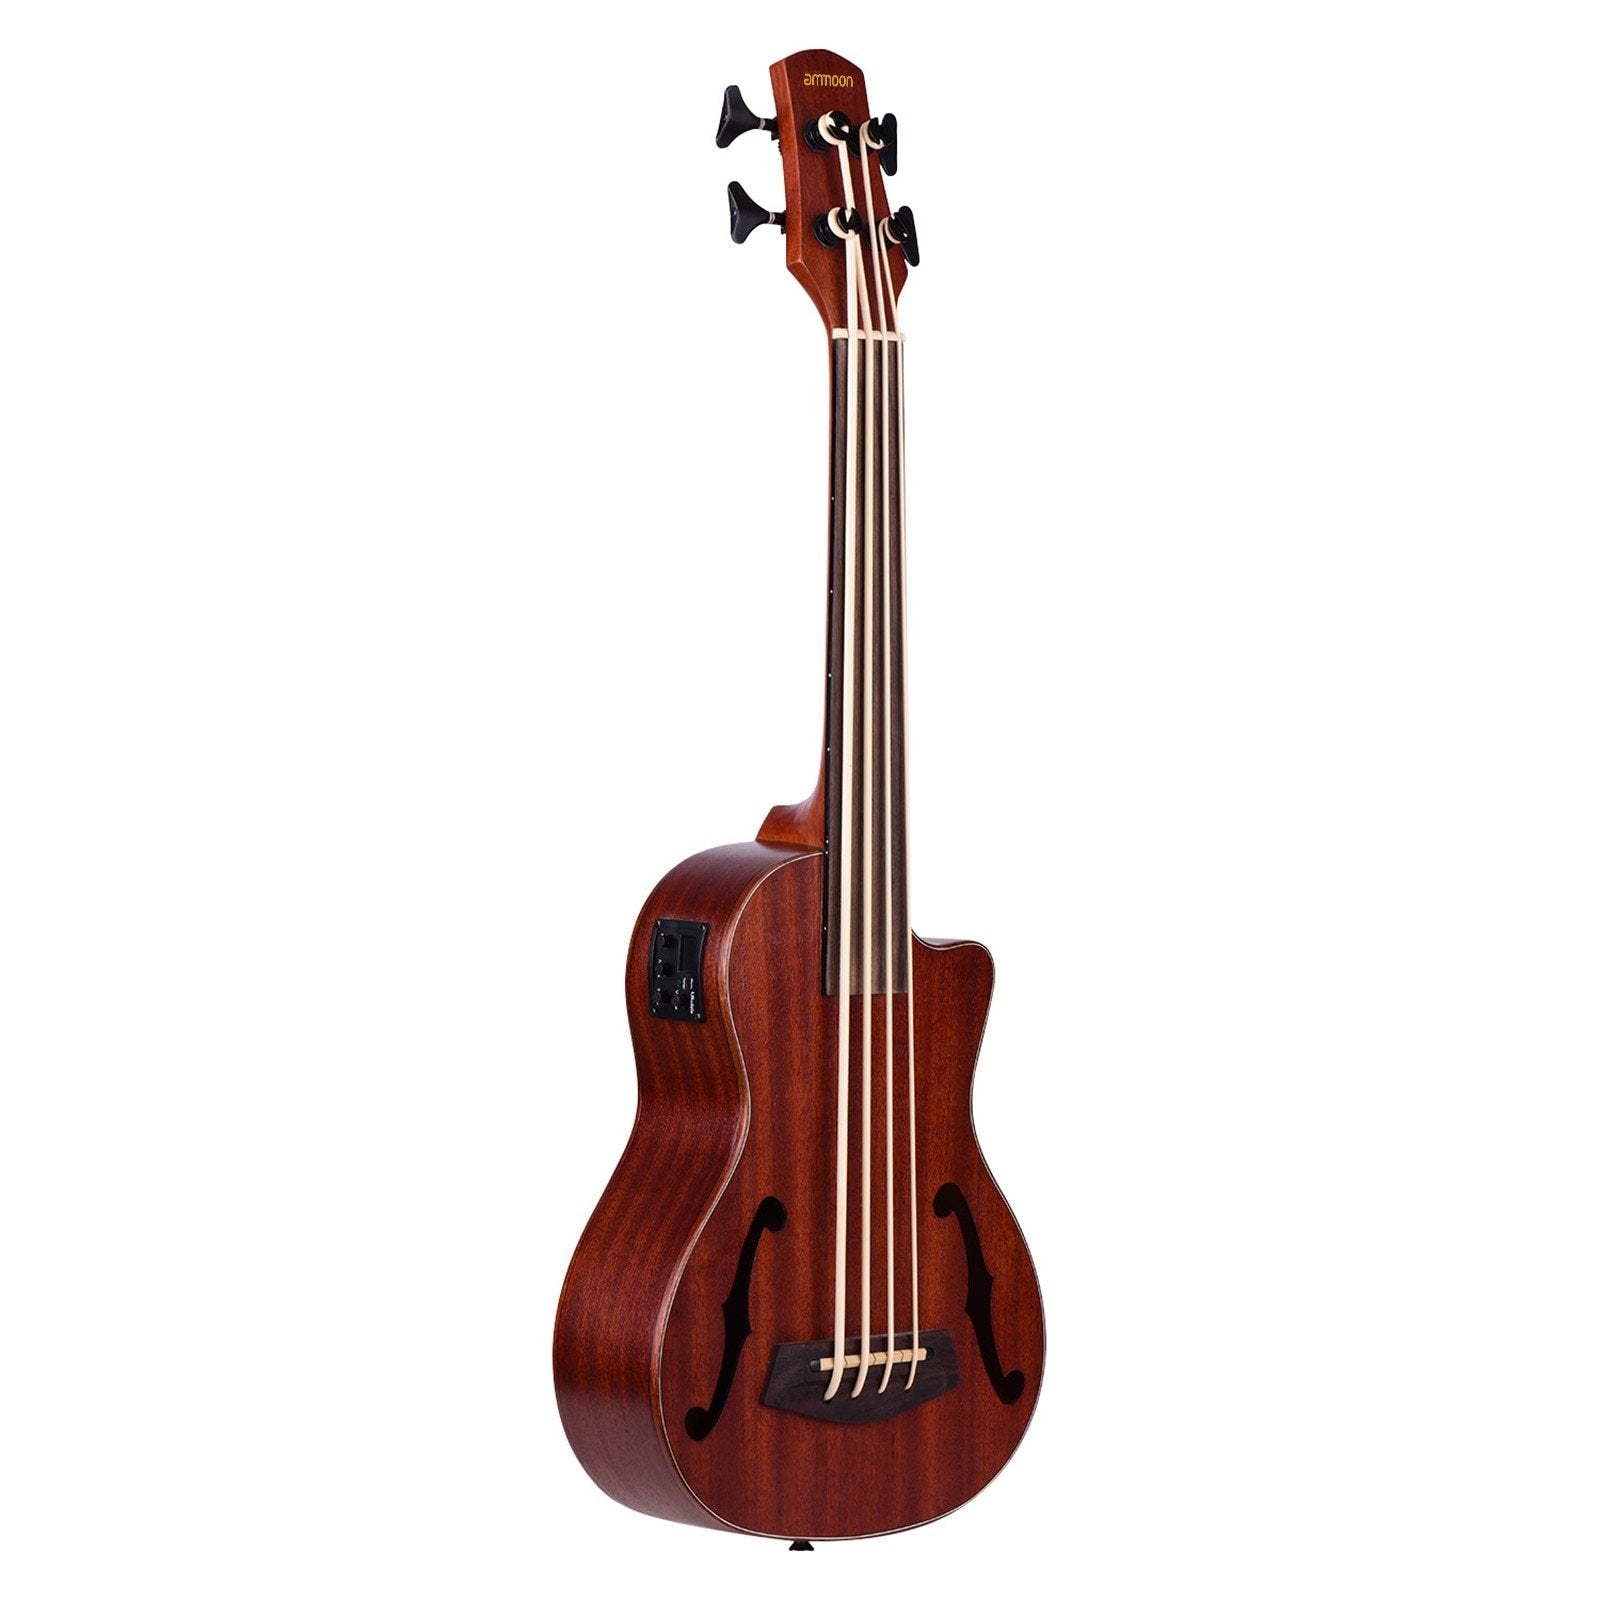 30 Inch Ukulele Cutaway U-Bass UBass Wooden Electric Acoustic Bass Ukulele Ukelele Built-in EQ Tuner with F Sound Holes - AKLOT